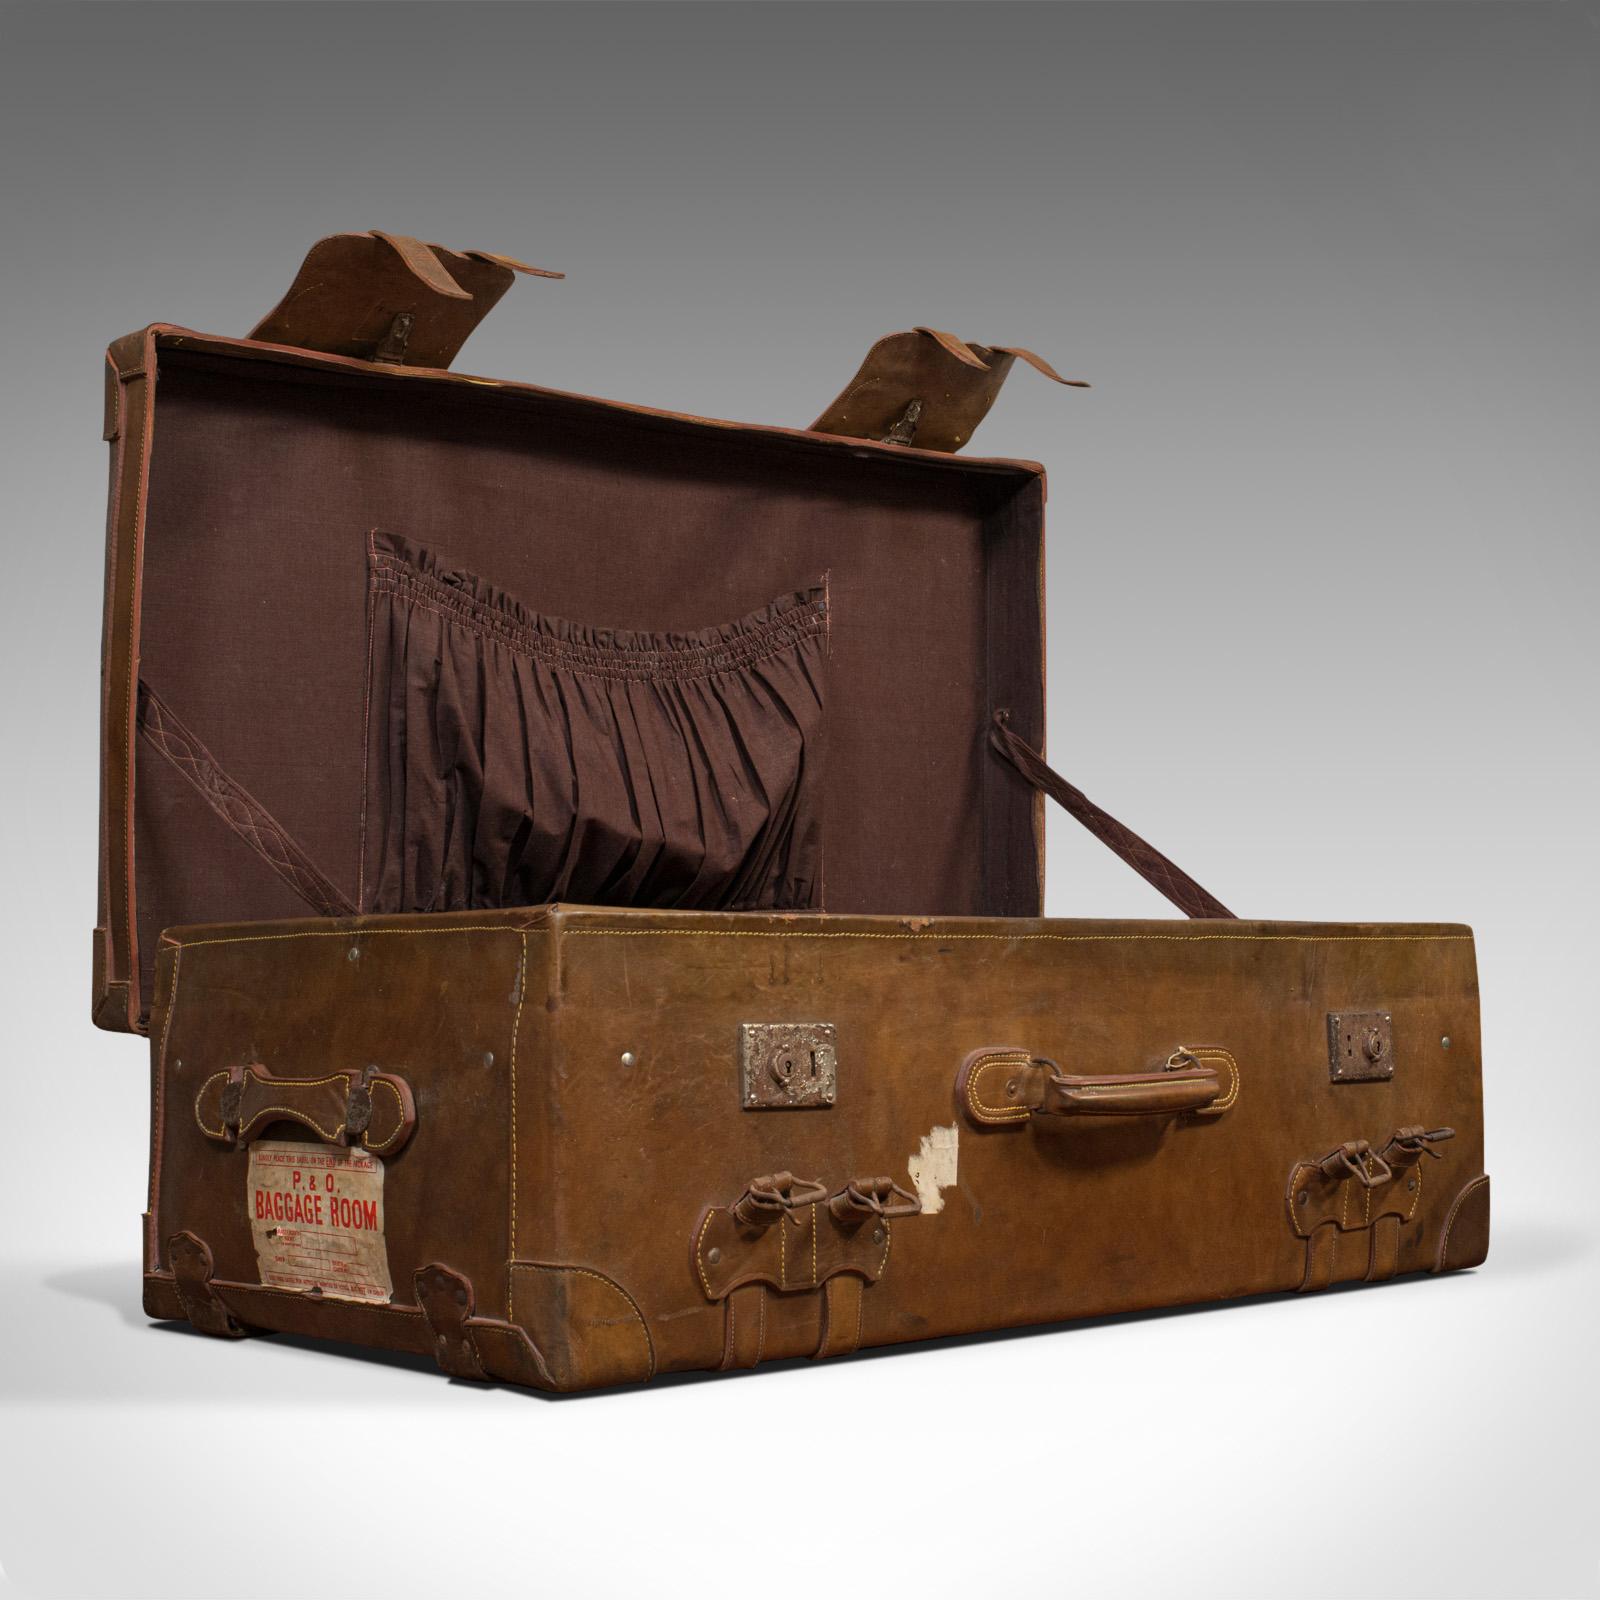 Il s'agit d'une très grande valise de voyage. Malle de bateau à vapeur ou d'expédition en cuir, datant de la fin de la période victorienne, vers 1900.

Des dimensions généreuses pour le plus grand des voyages
Affiche une patine vieillie